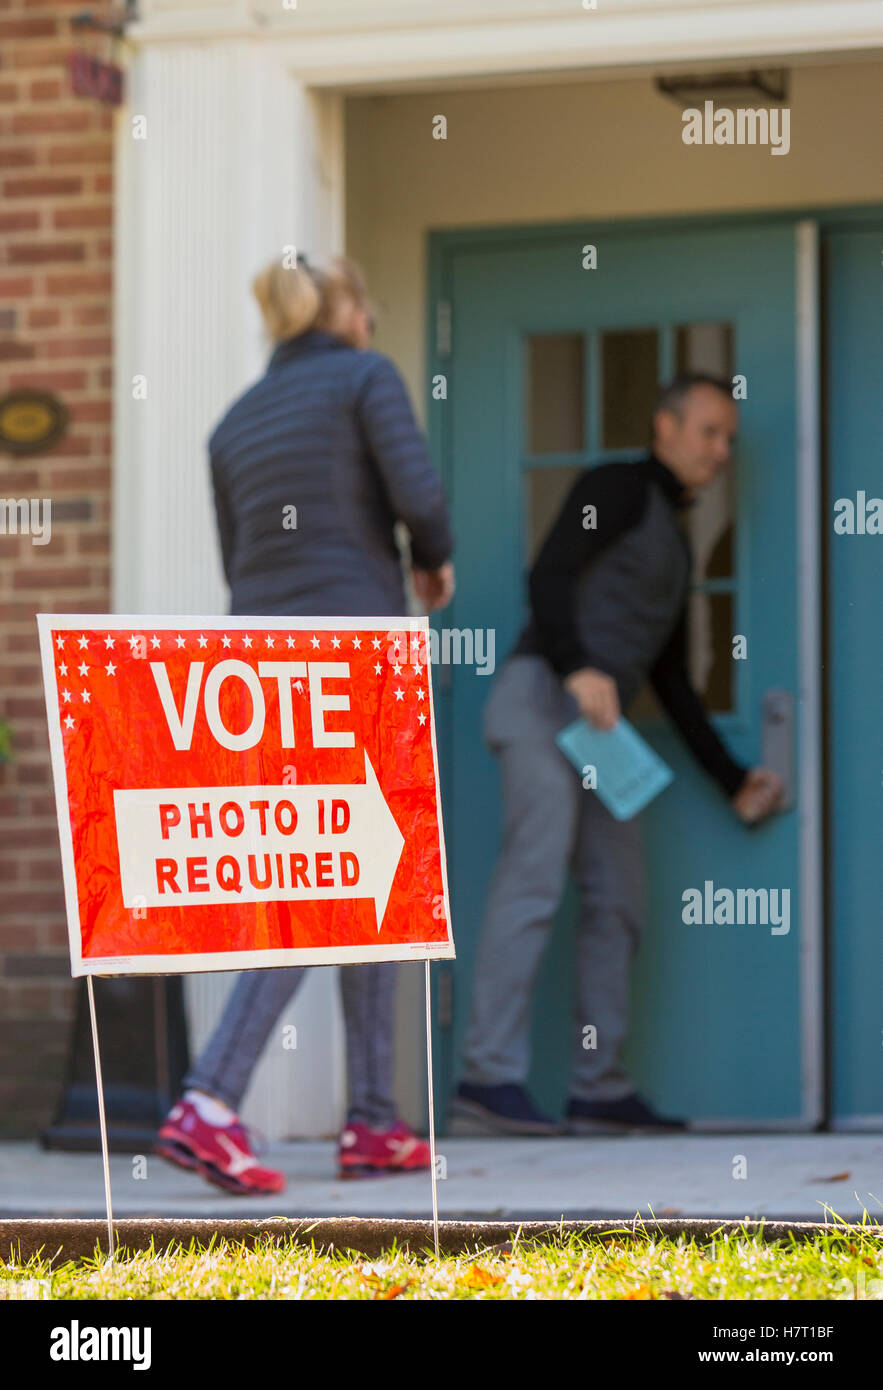 Arlington, Virginia, Stati Uniti d'America. 8 Novembre, 2016. Elettori sulle elezioni presidenziali giorno. Credito: Rob Crandall/Alamy Live News Foto Stock